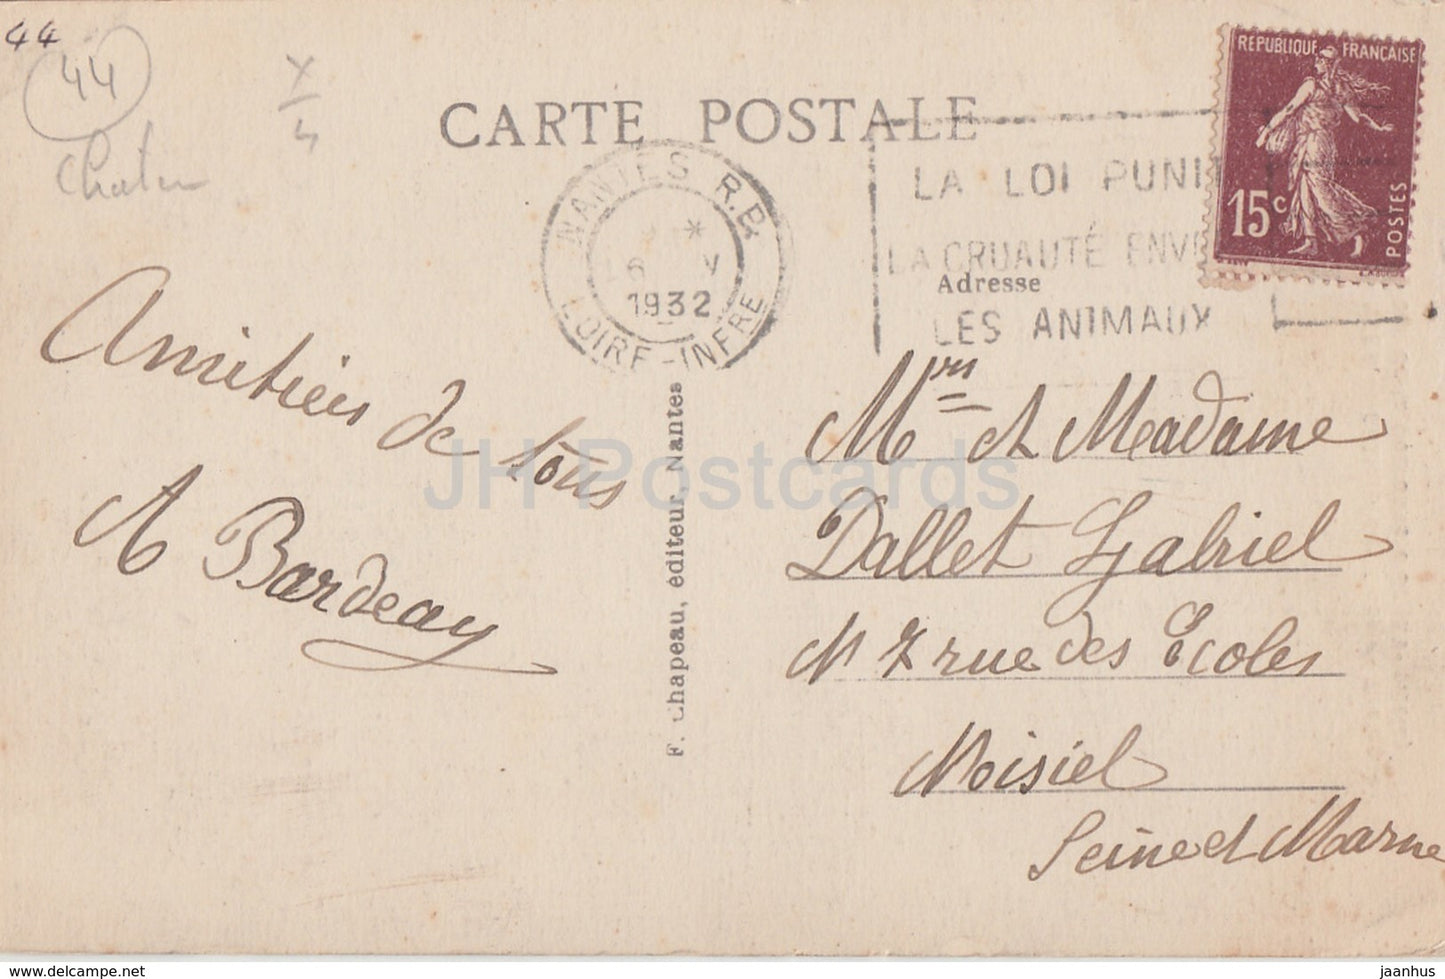 Nantes - Château des Ducs de Bretagne - La Tour de la Couronne d'Or - château - 240 - carte postale ancienne - 1932 - France - occasion